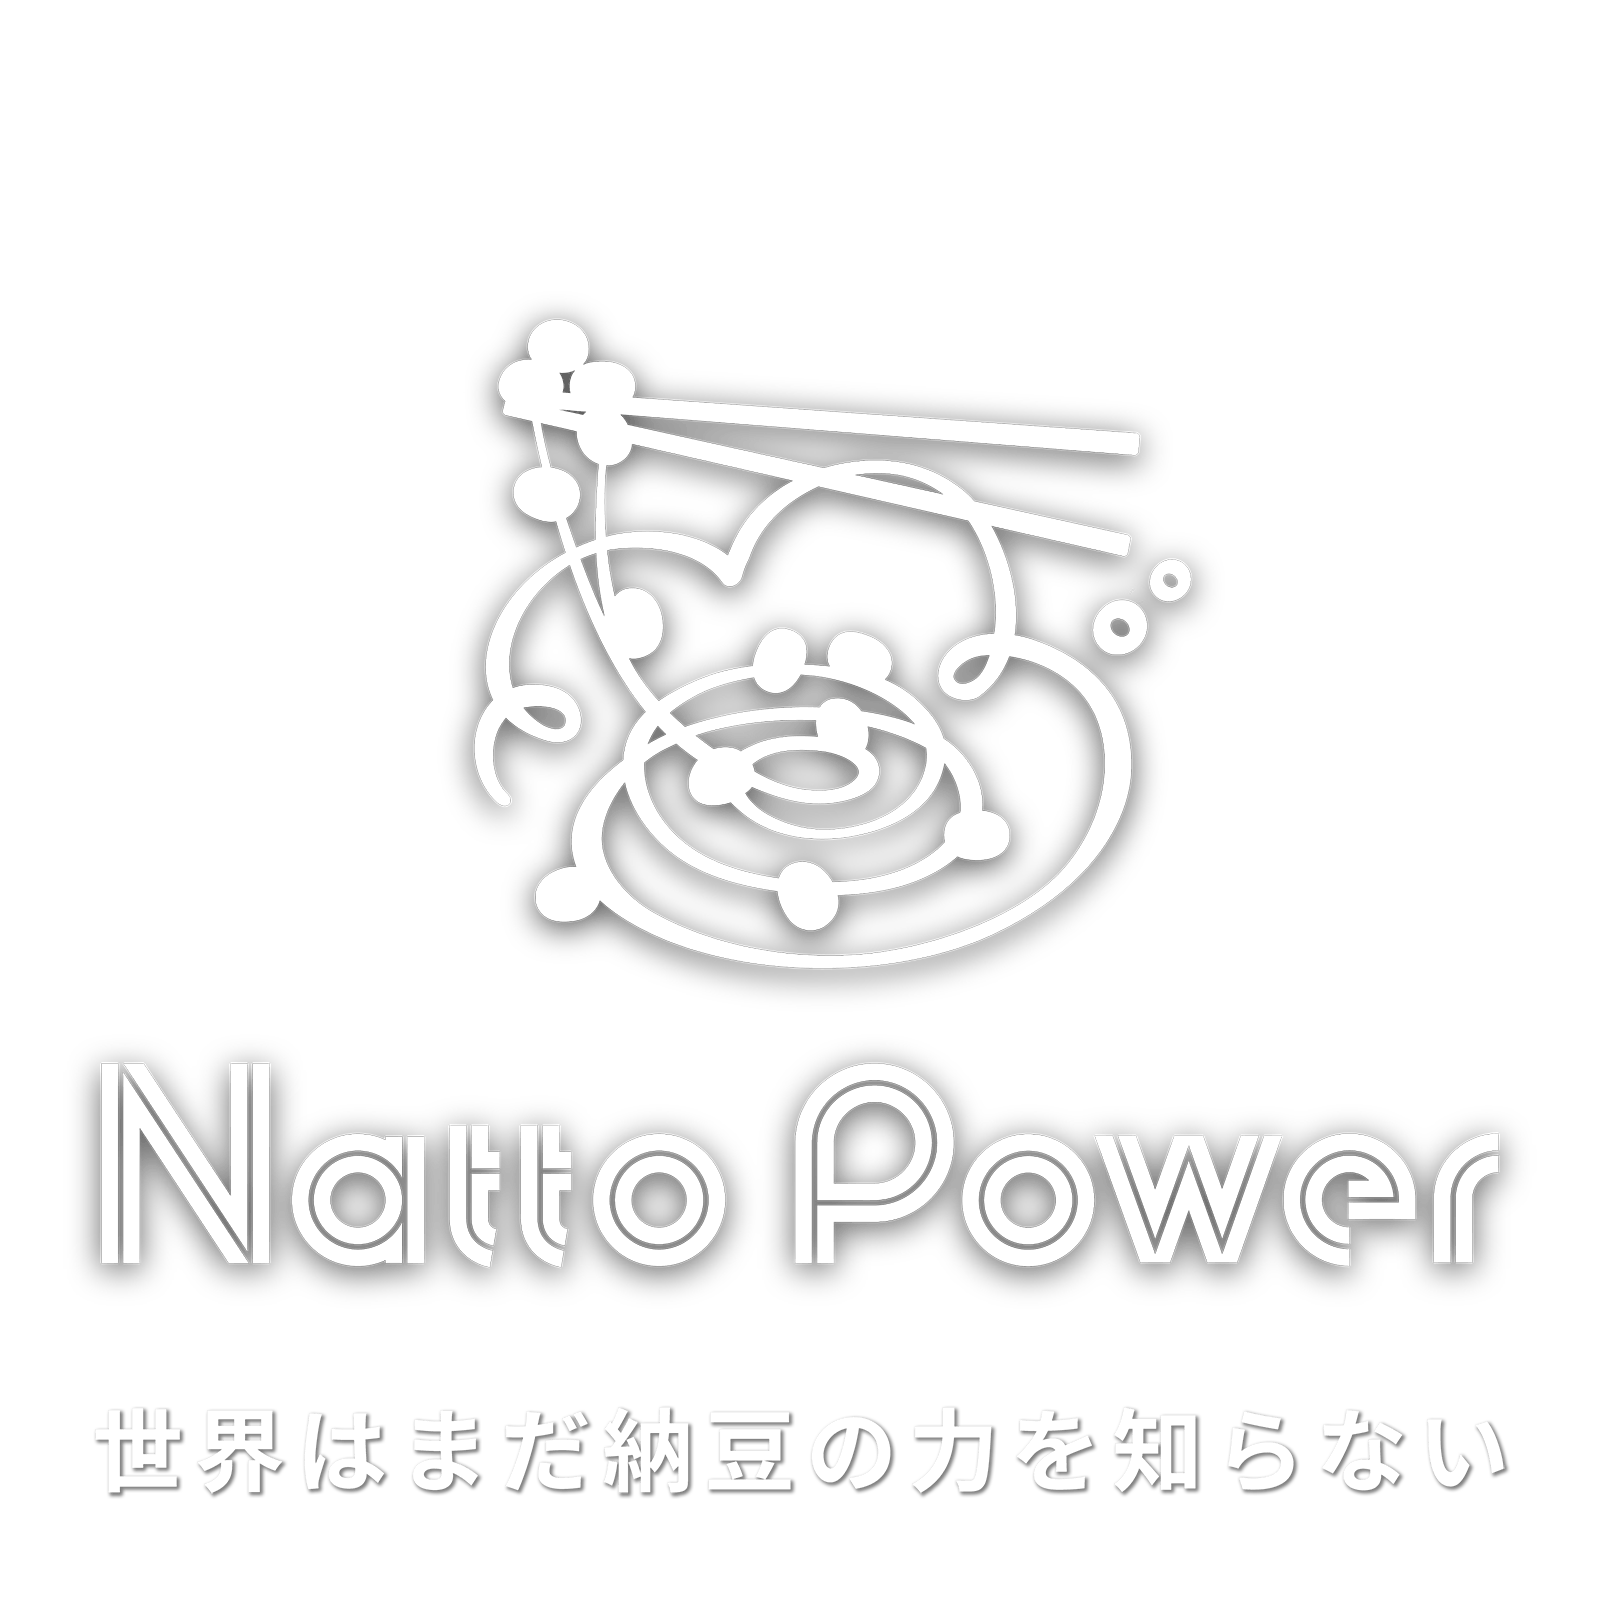 Natto Power 世界はまだ納豆の力を知らない